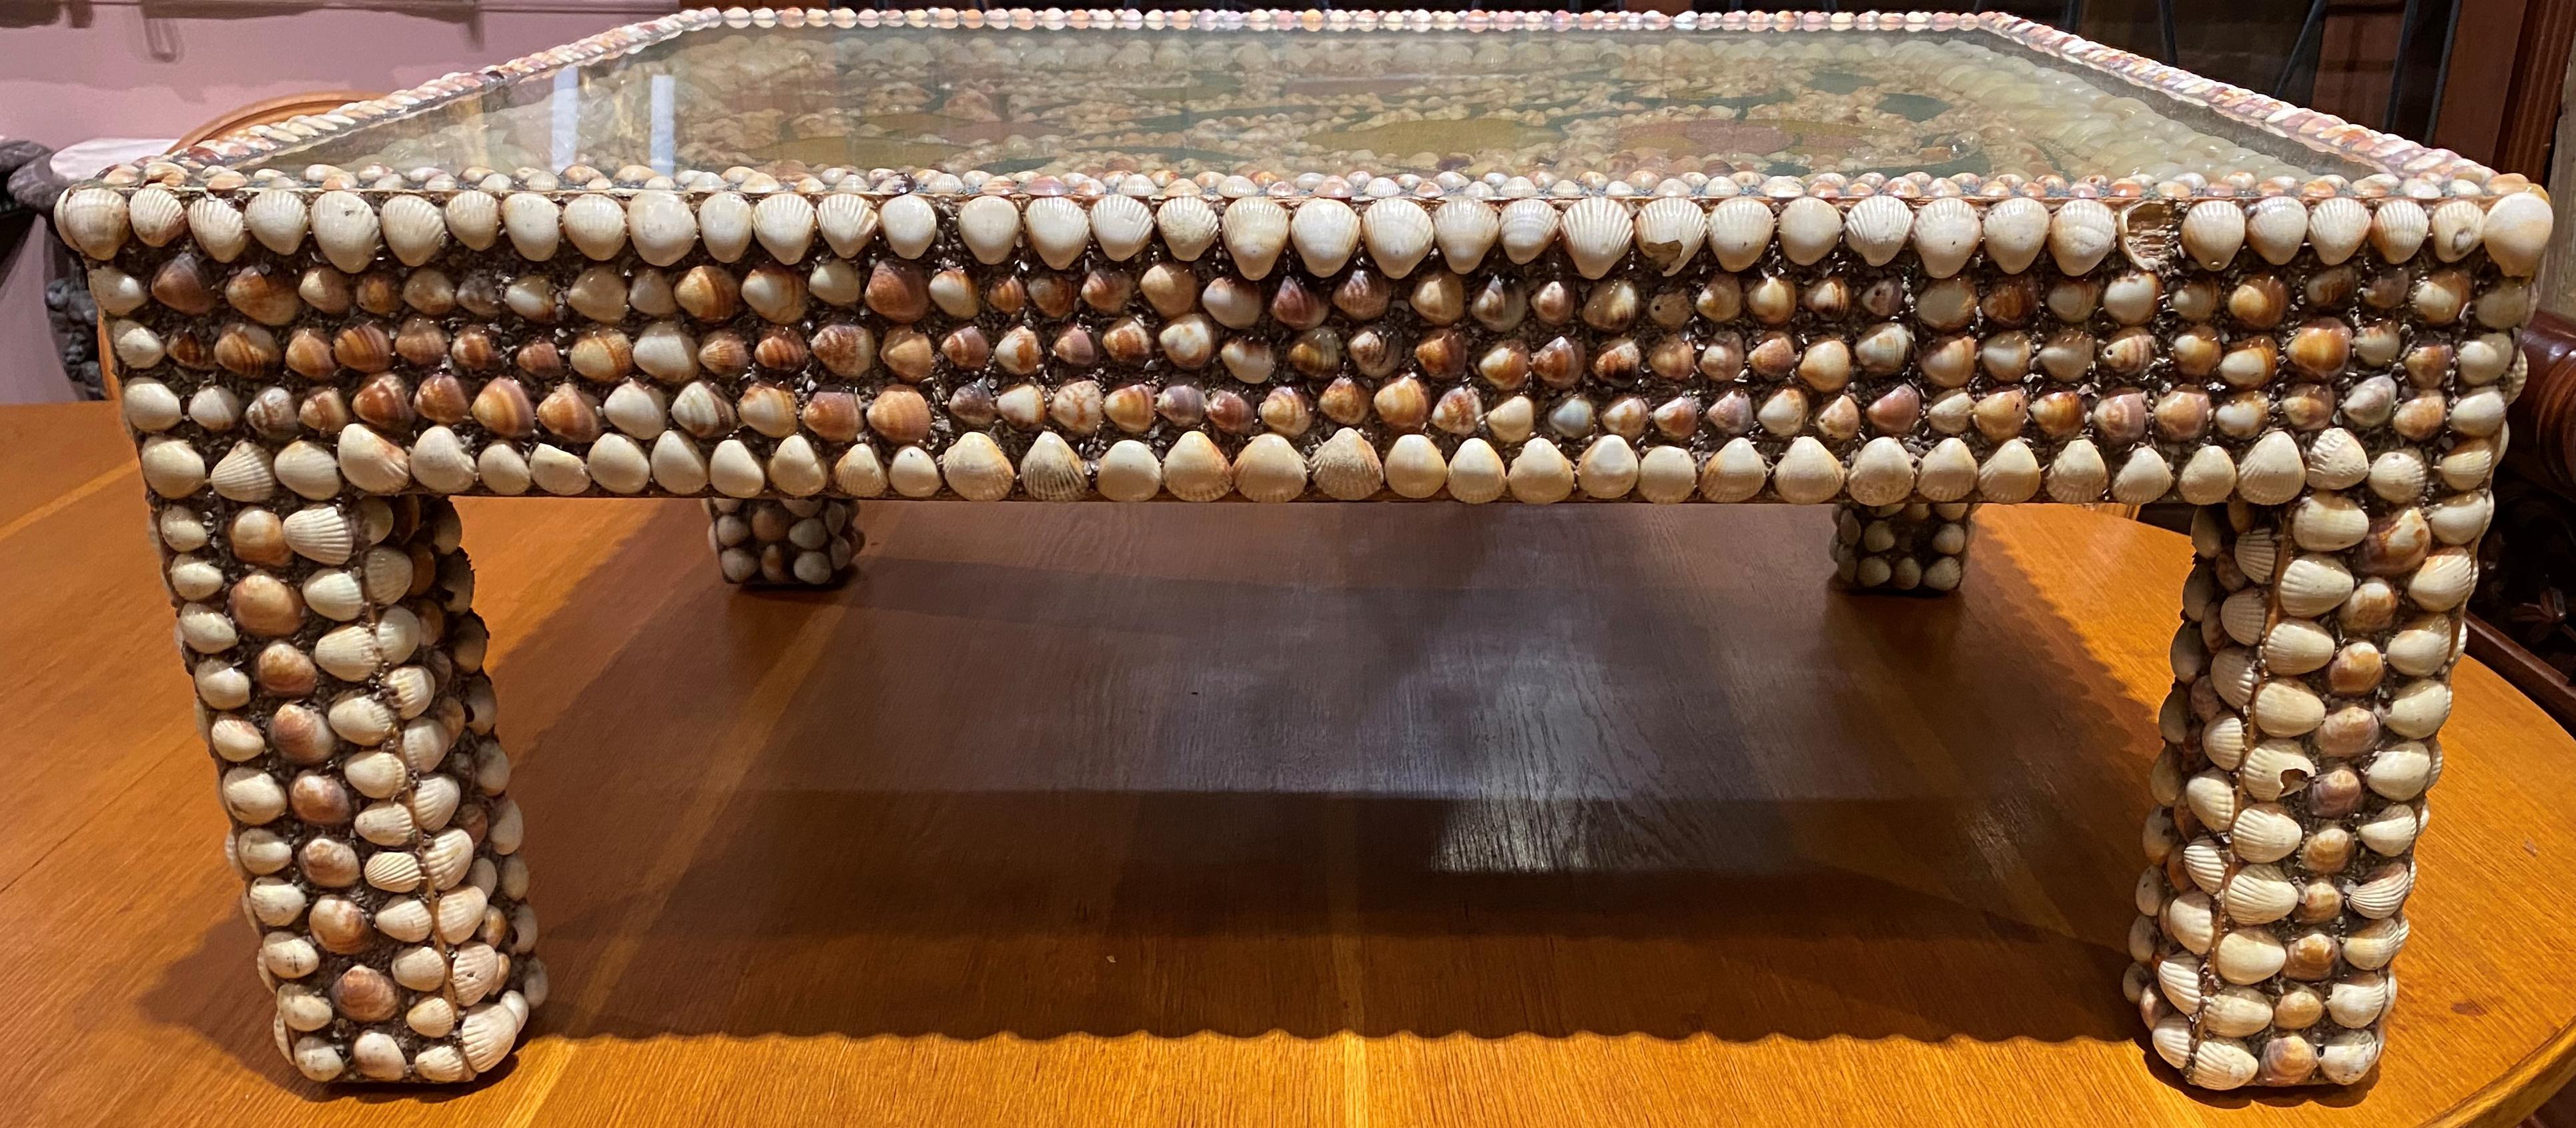 Magnifique table rectangulaire d'art populaire à décor de coquillages. Le plateau est orné d'un motif de sable polychrome autour de coquillages sous verre, toute la surface des côtés et des pieds est recouverte de petits coquillages sertis dans le